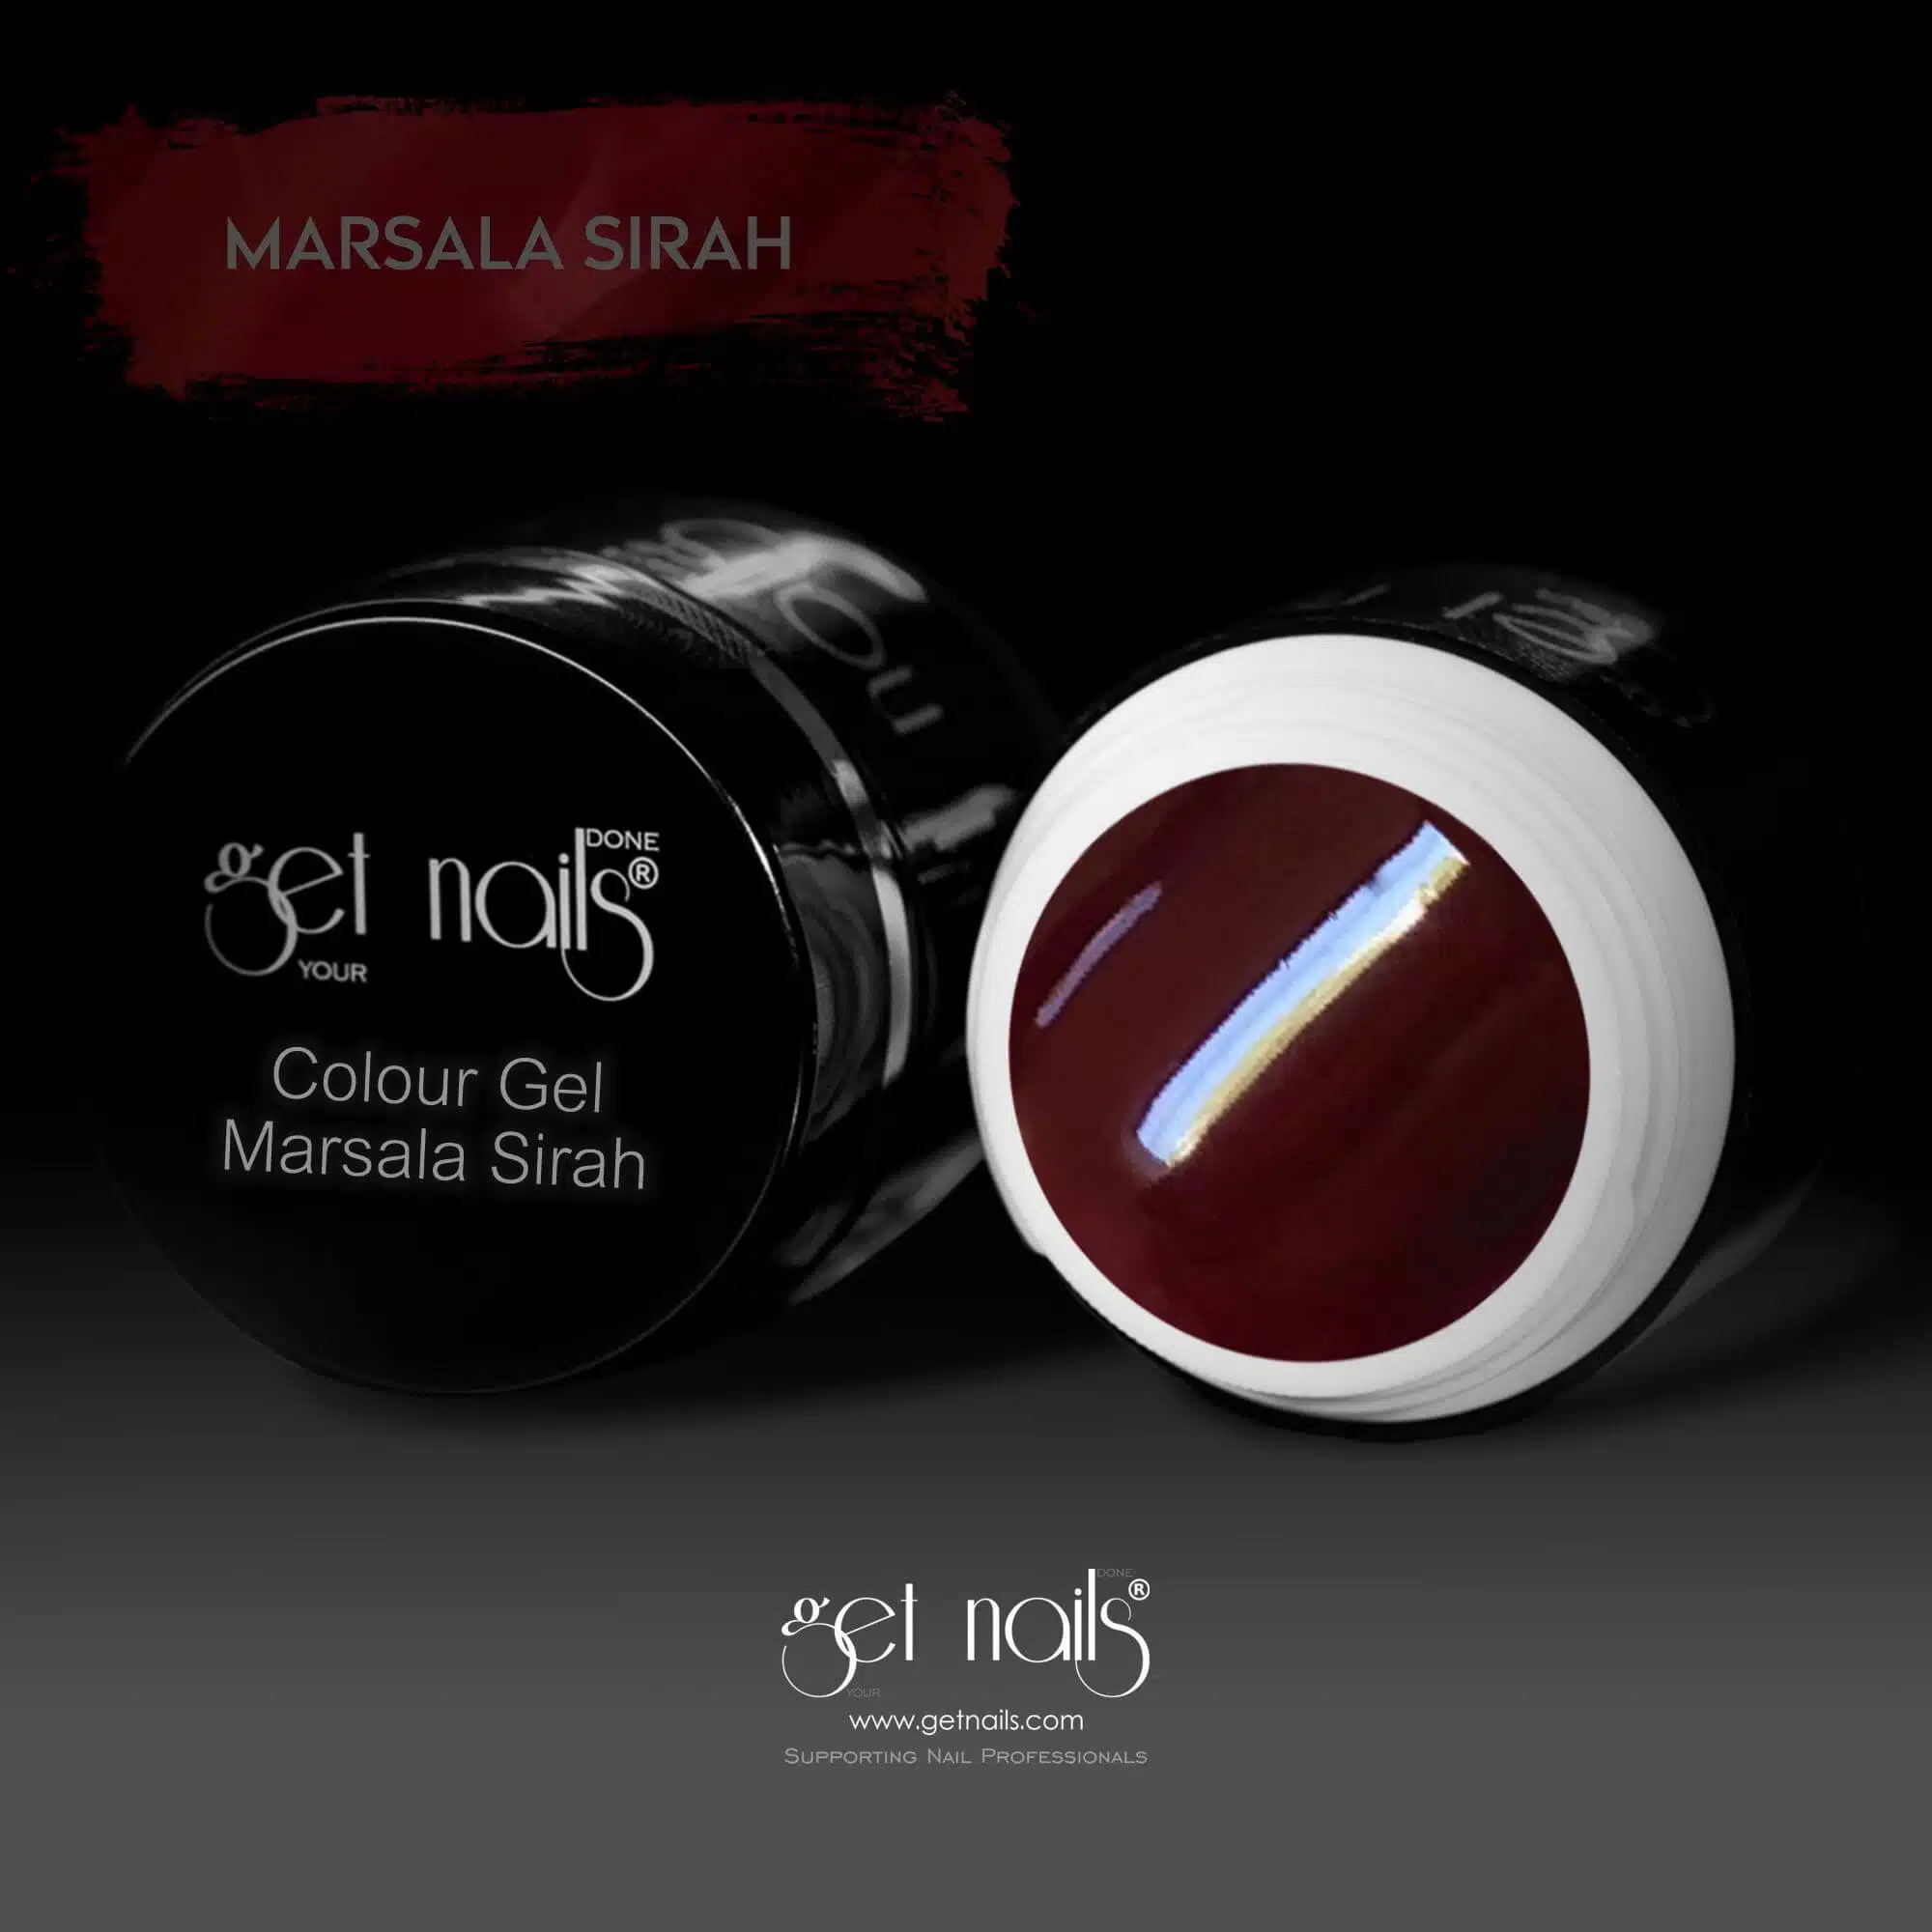 Get Nails Austria - Színes gél Marsala Syrah 5g